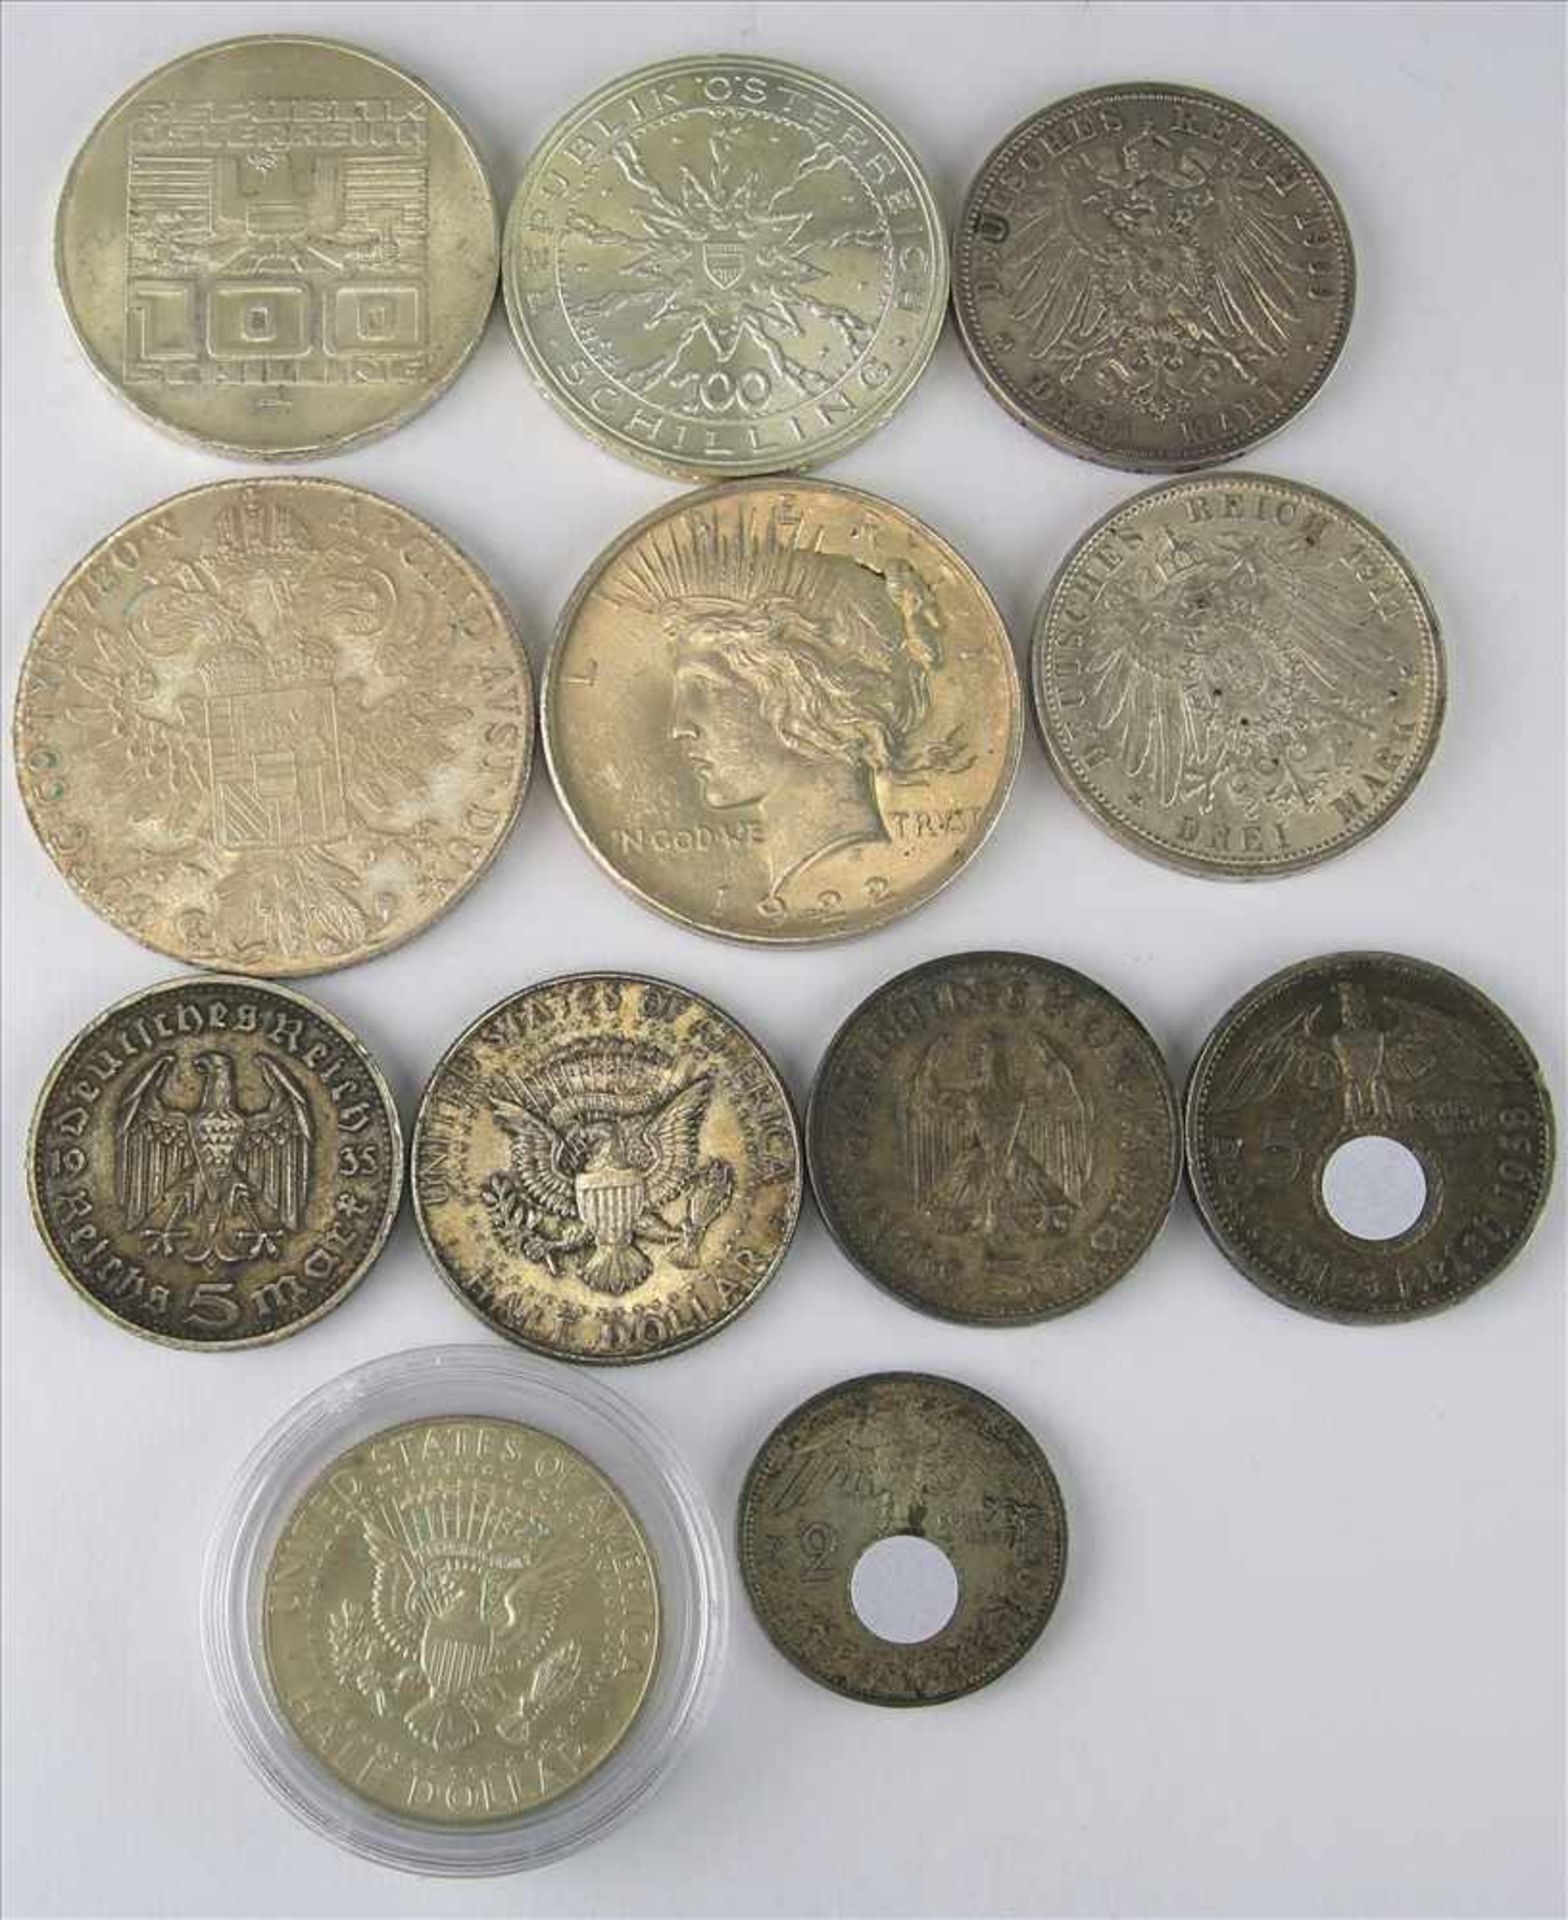 Konvolut MünzenTeils Silber. 2 x 100 Schilling, 1 x Maria Theresia Taler, 2 x 3 Mark Deutsches Reich - Bild 2 aus 2